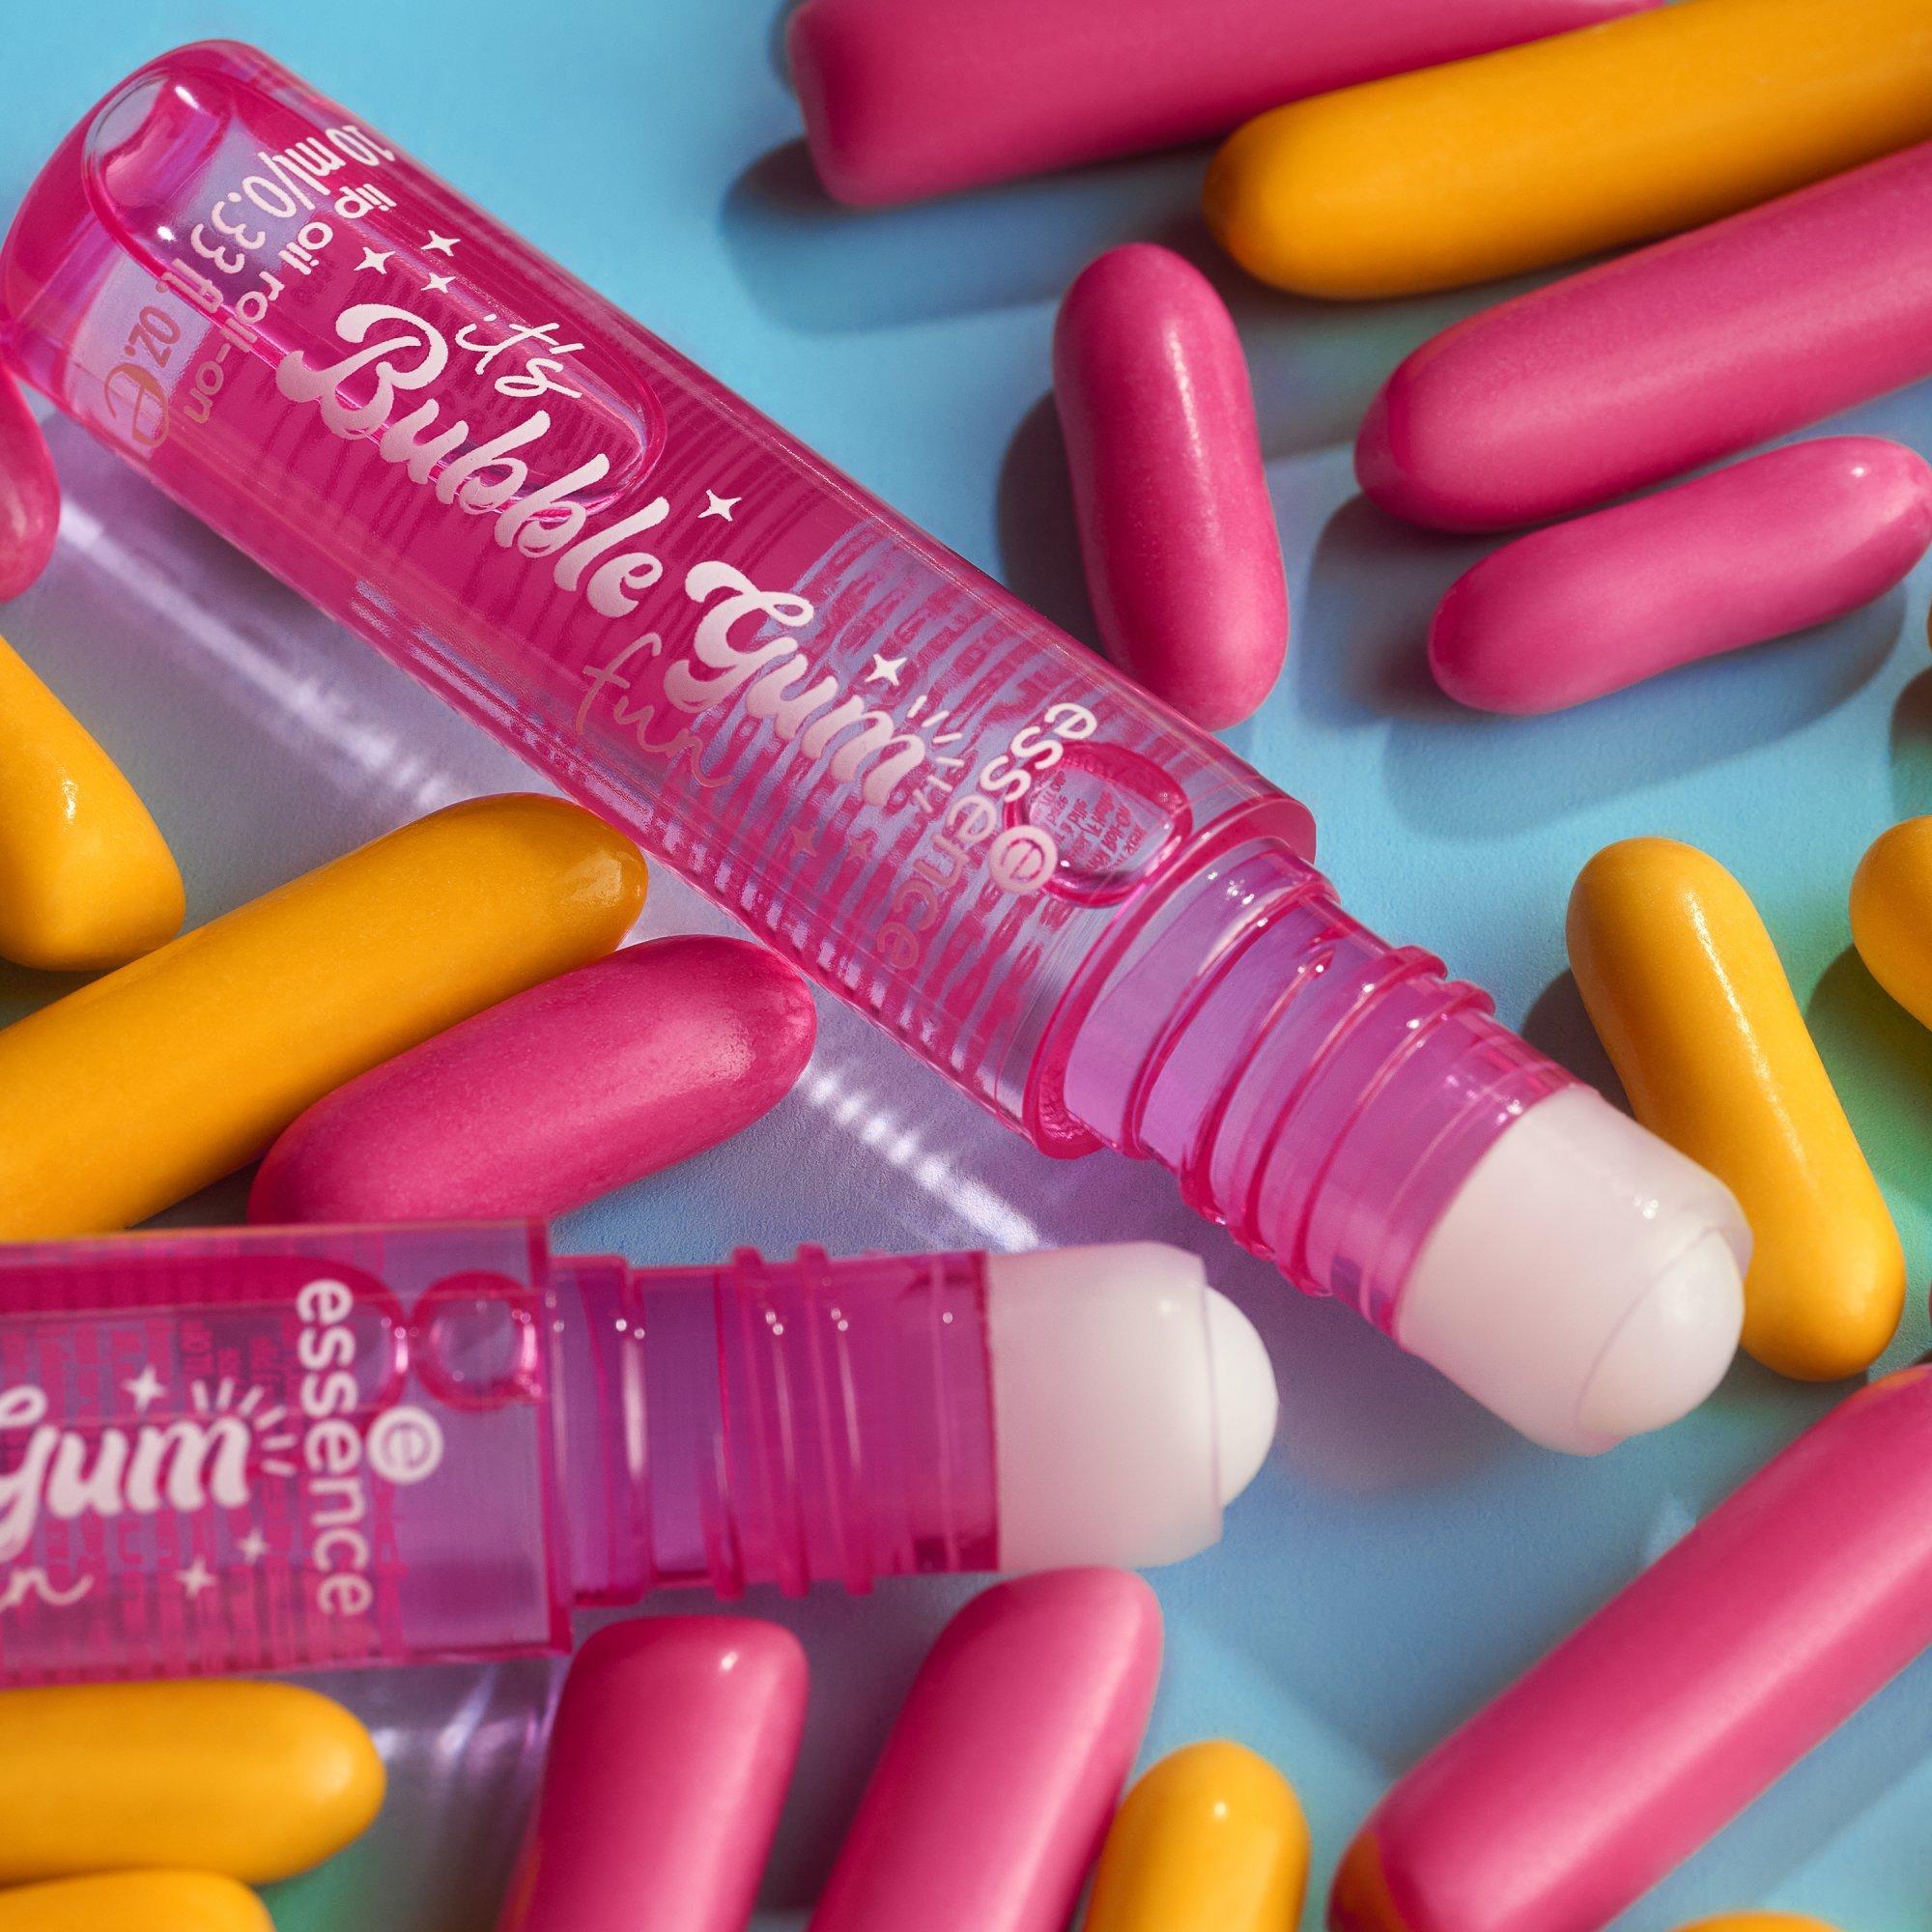 it's Bubble Gum fun lip oil roll-on